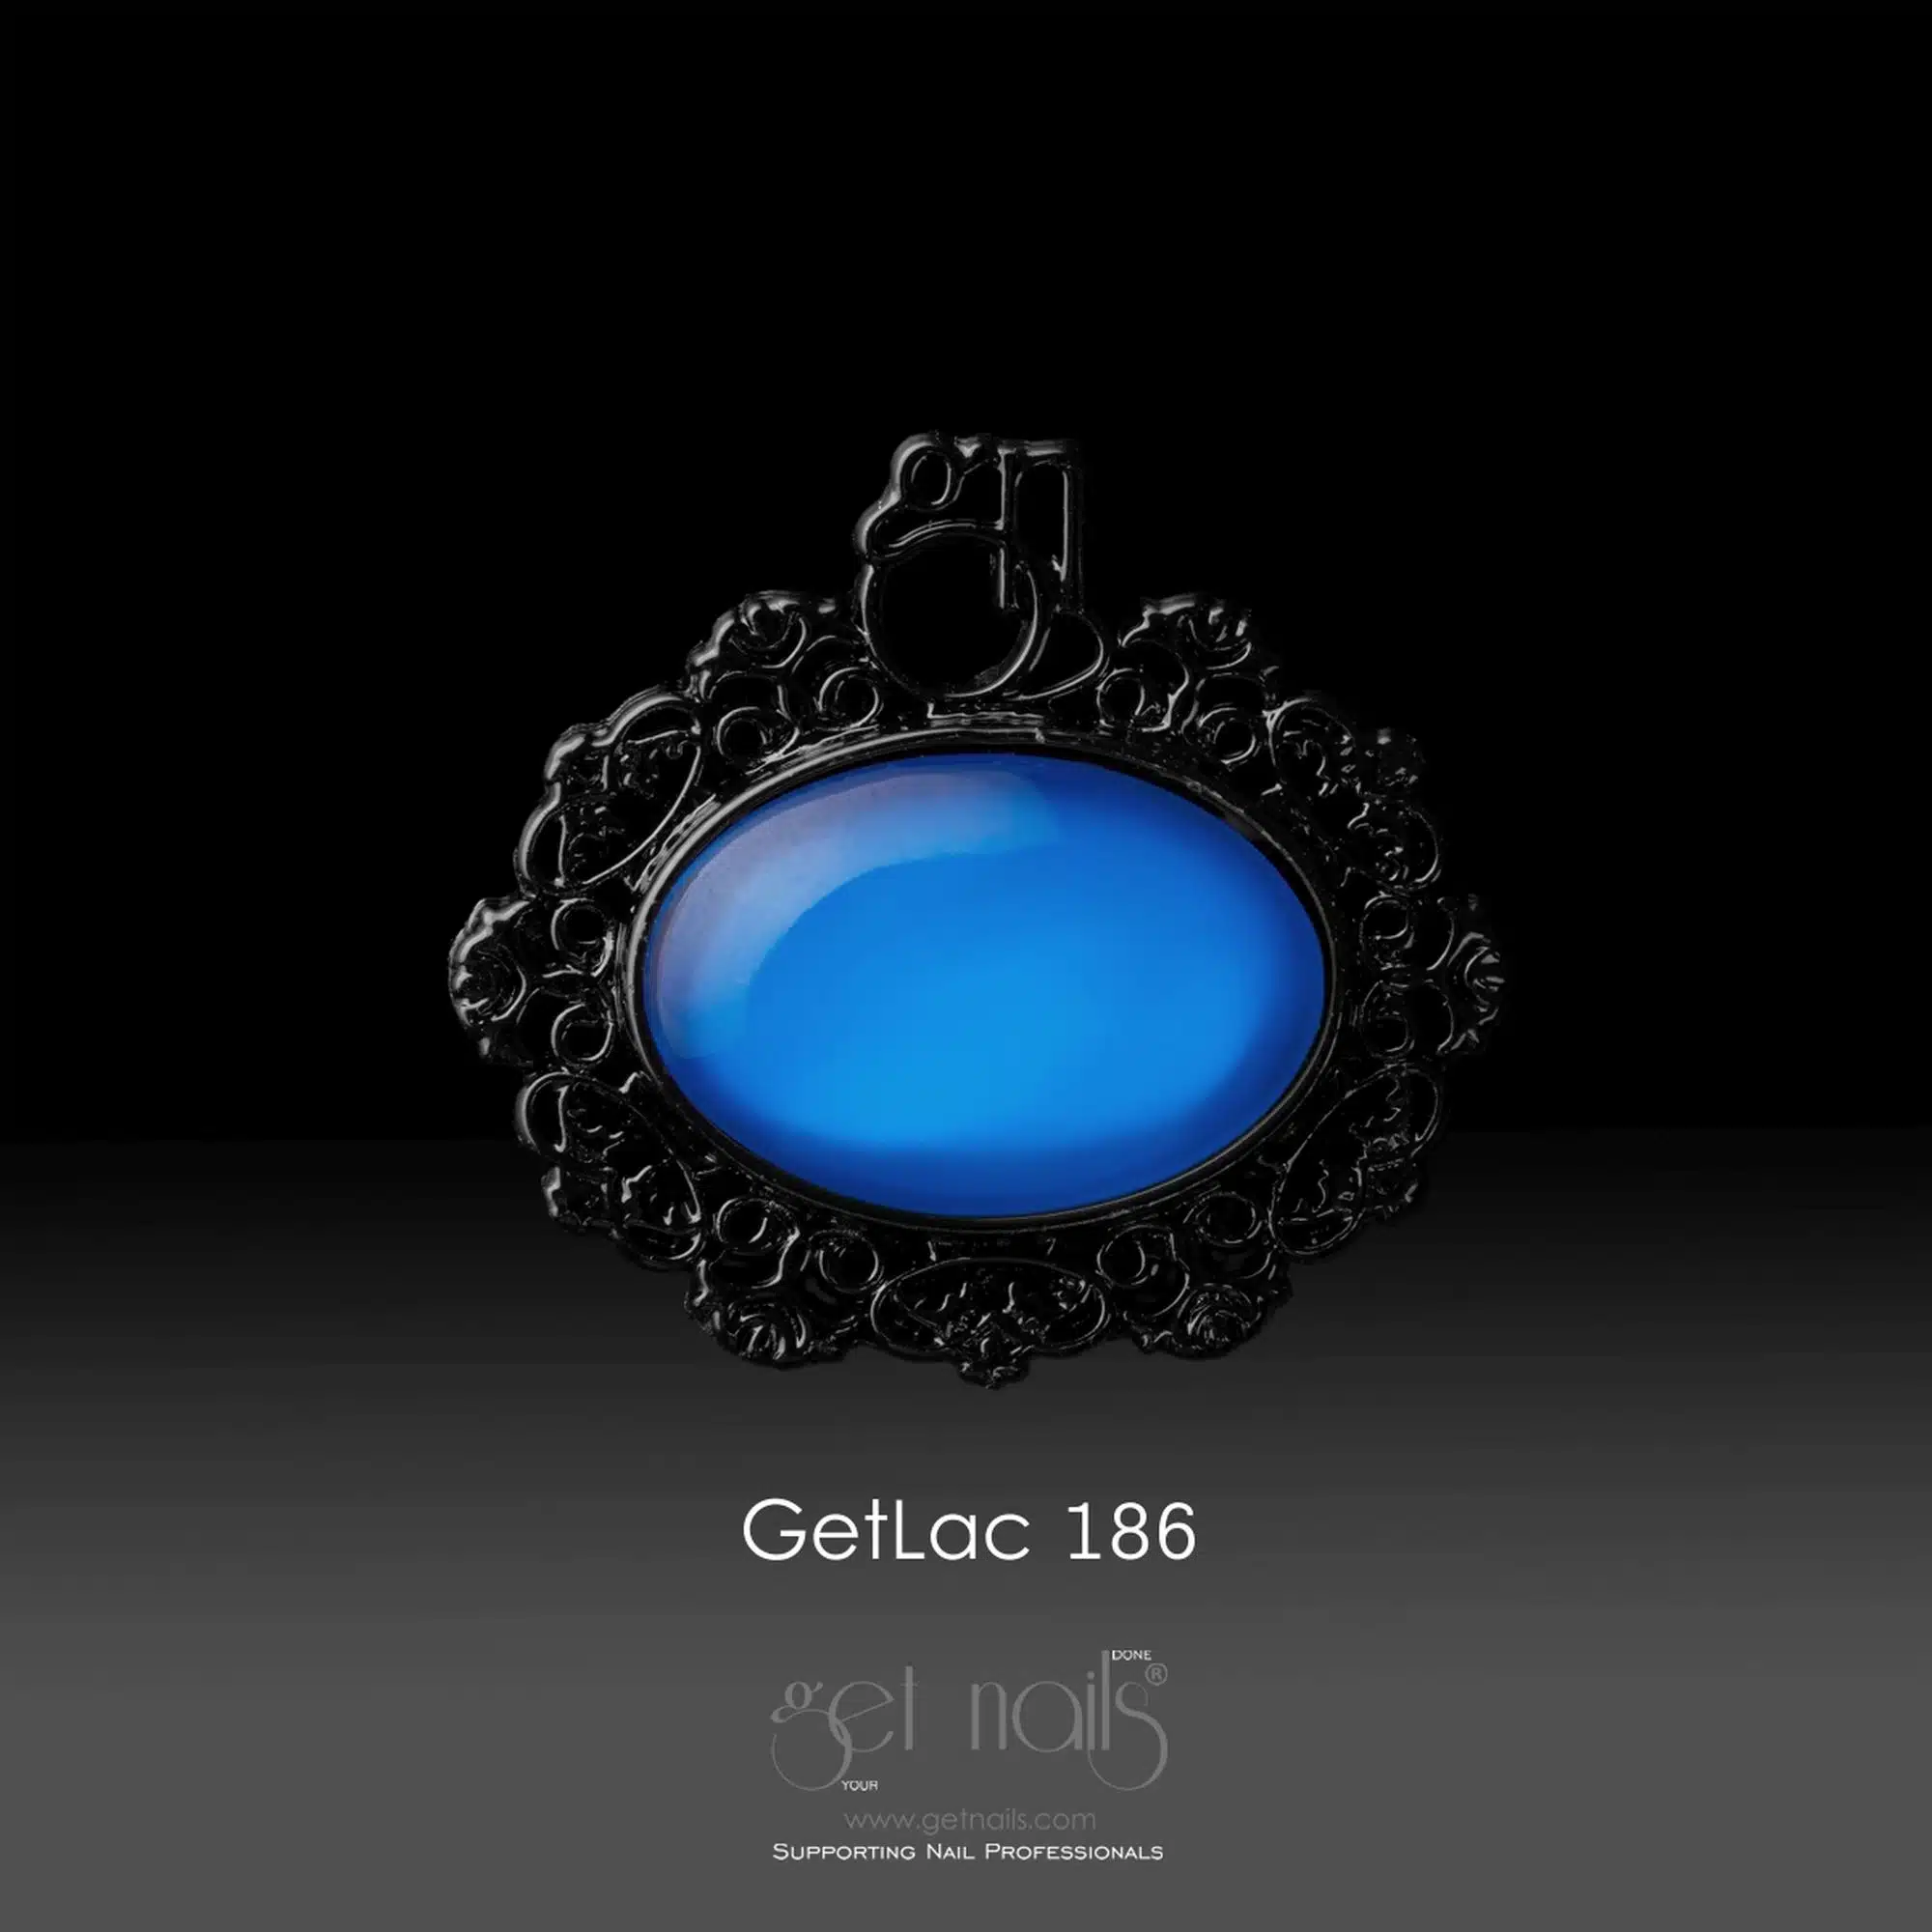 Get Nails Австрия - GetLac 186